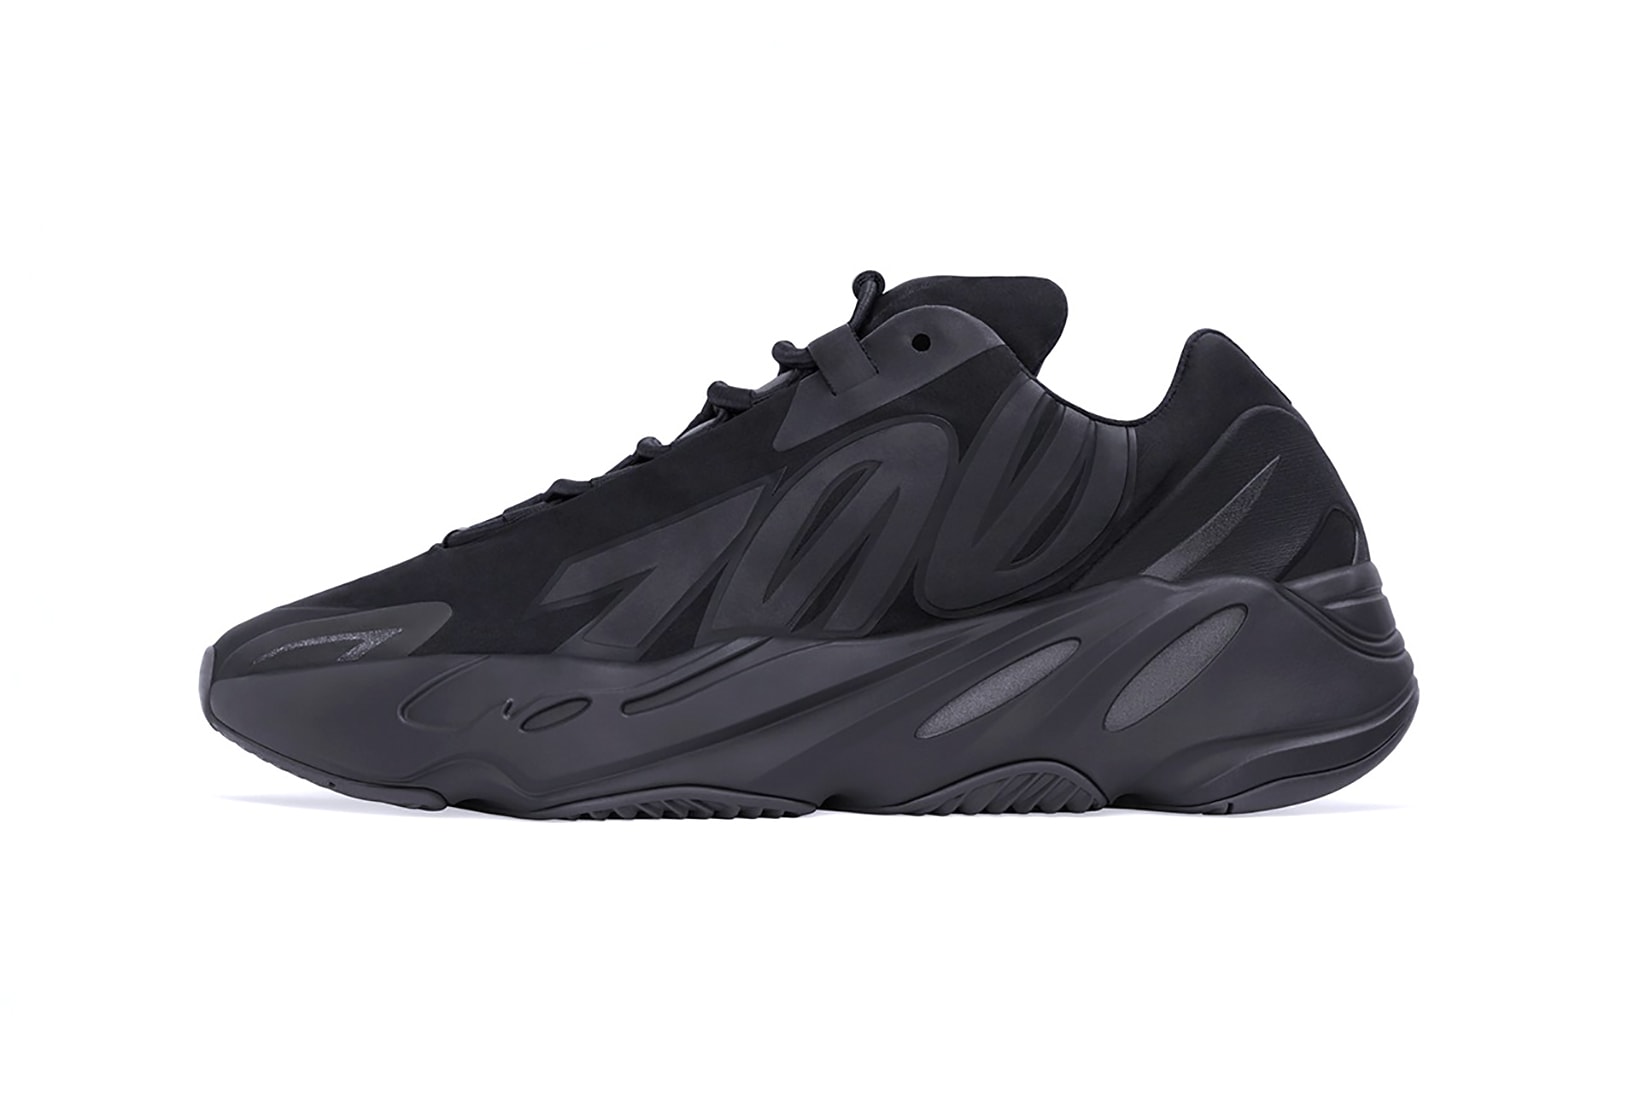 adidas kanye west yeezy boost 700 mnvn sneakers triple black colorway shoes footwear sneakerhead